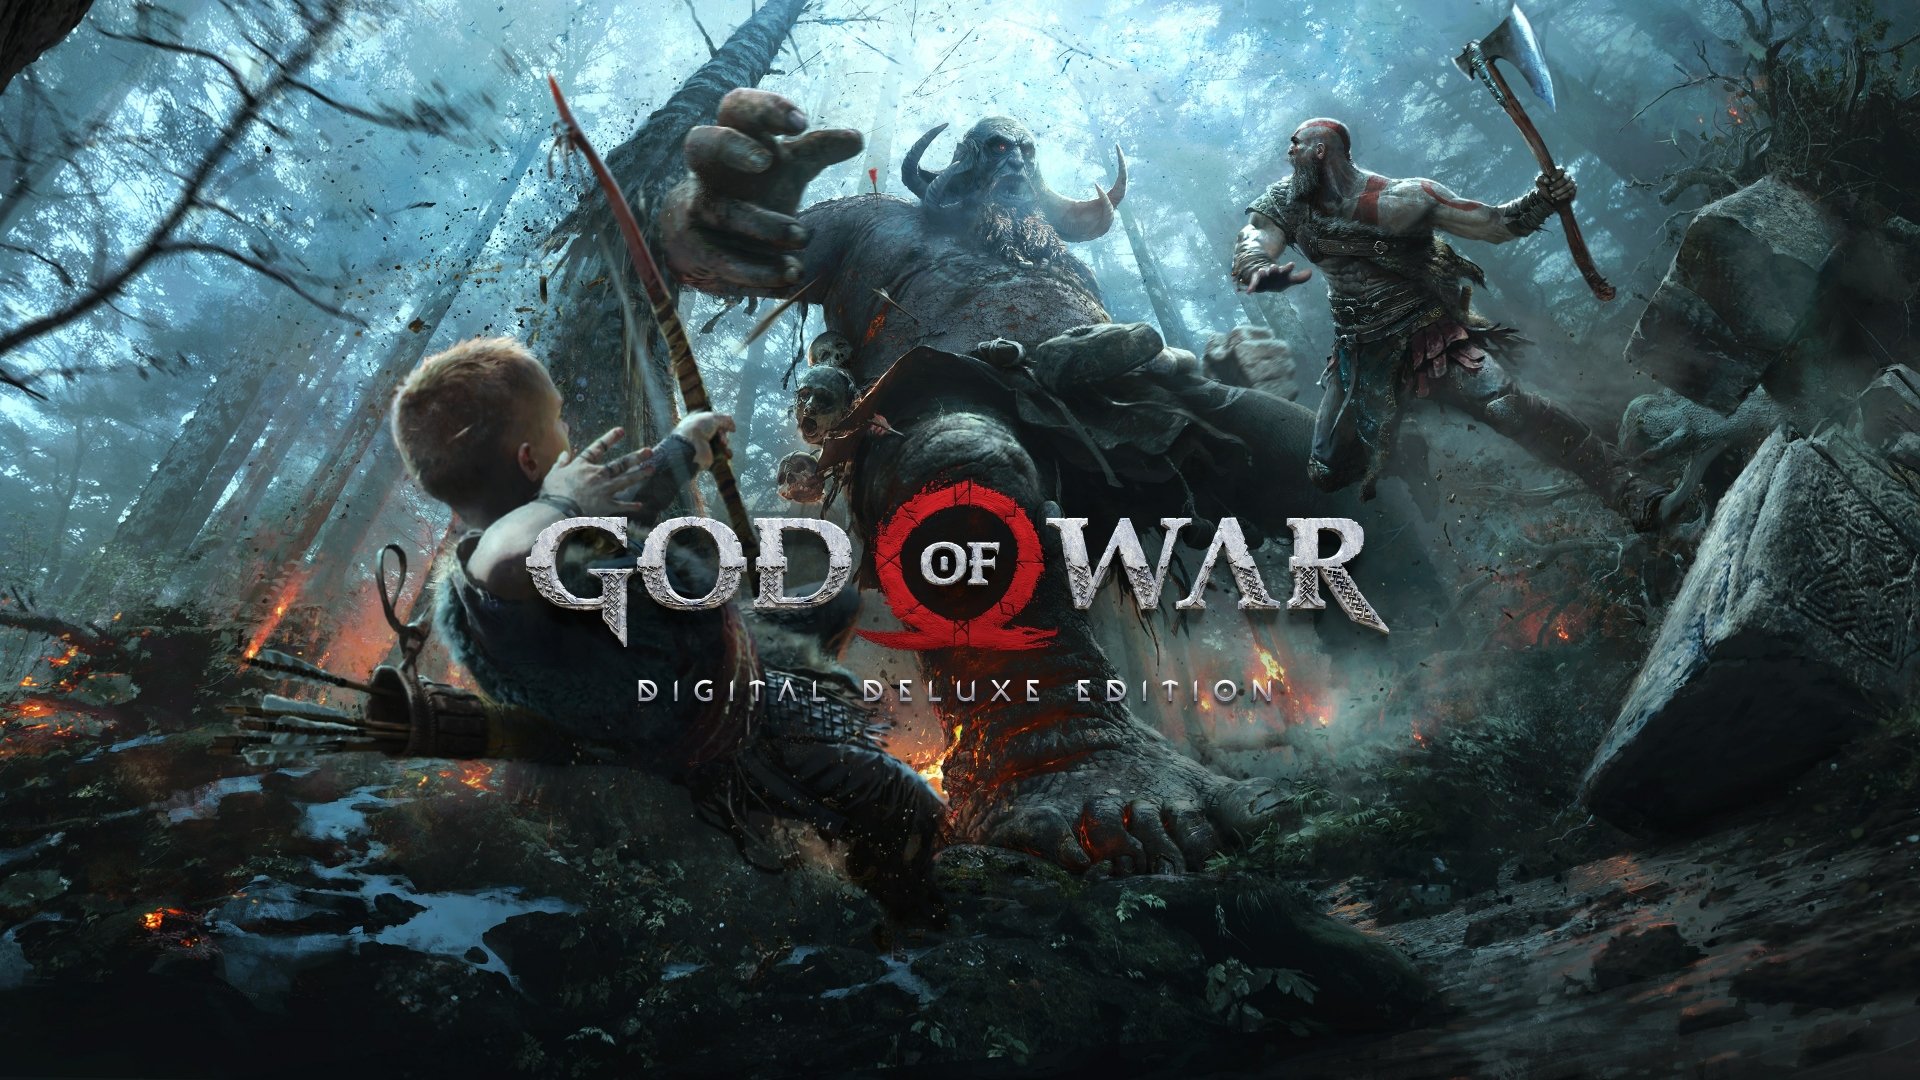 download god of war ragnarok new game